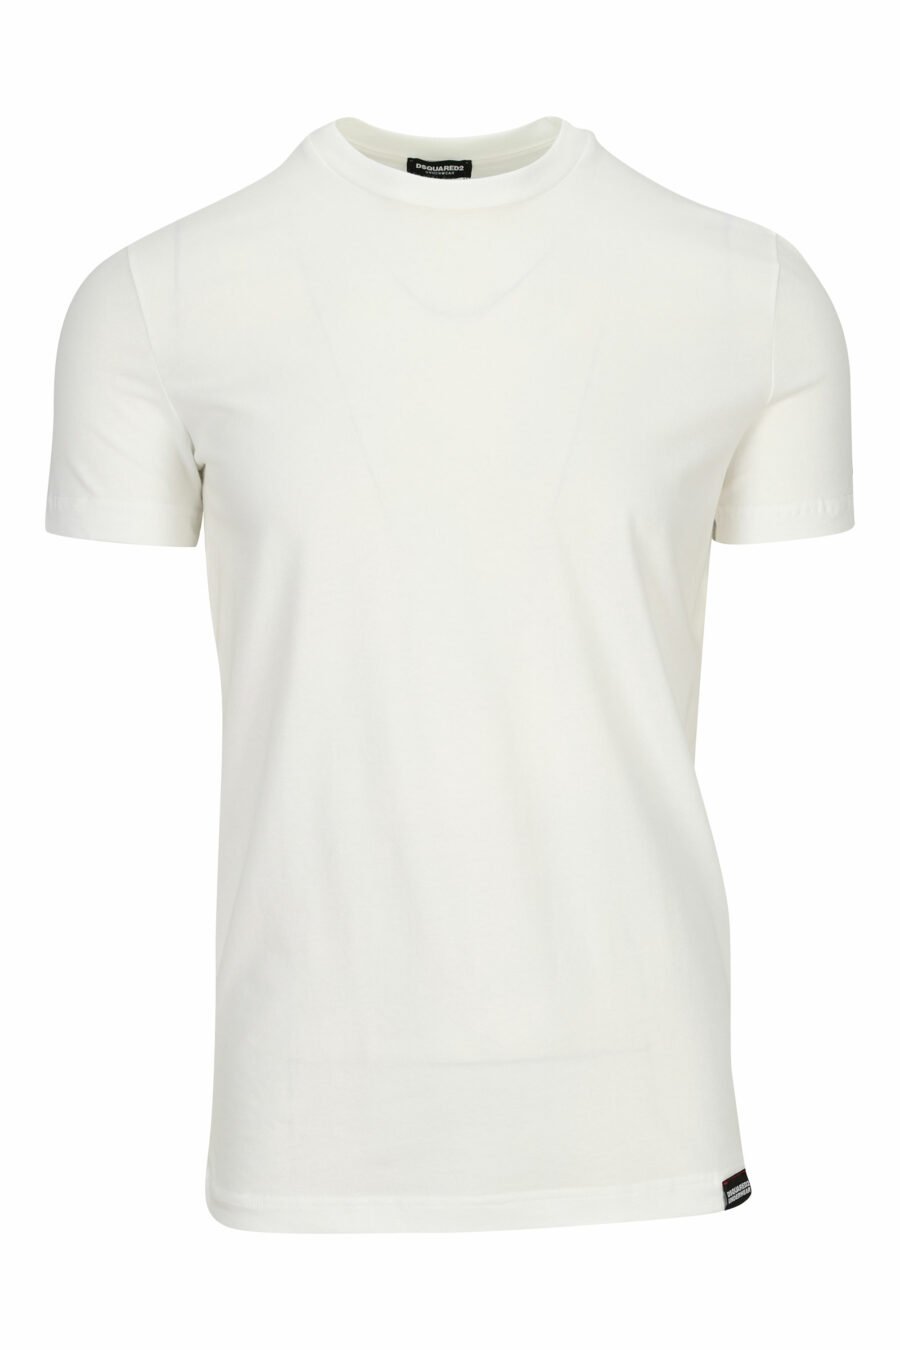 T-shirt branca com "roupa interior" minilogue - 8032674811561